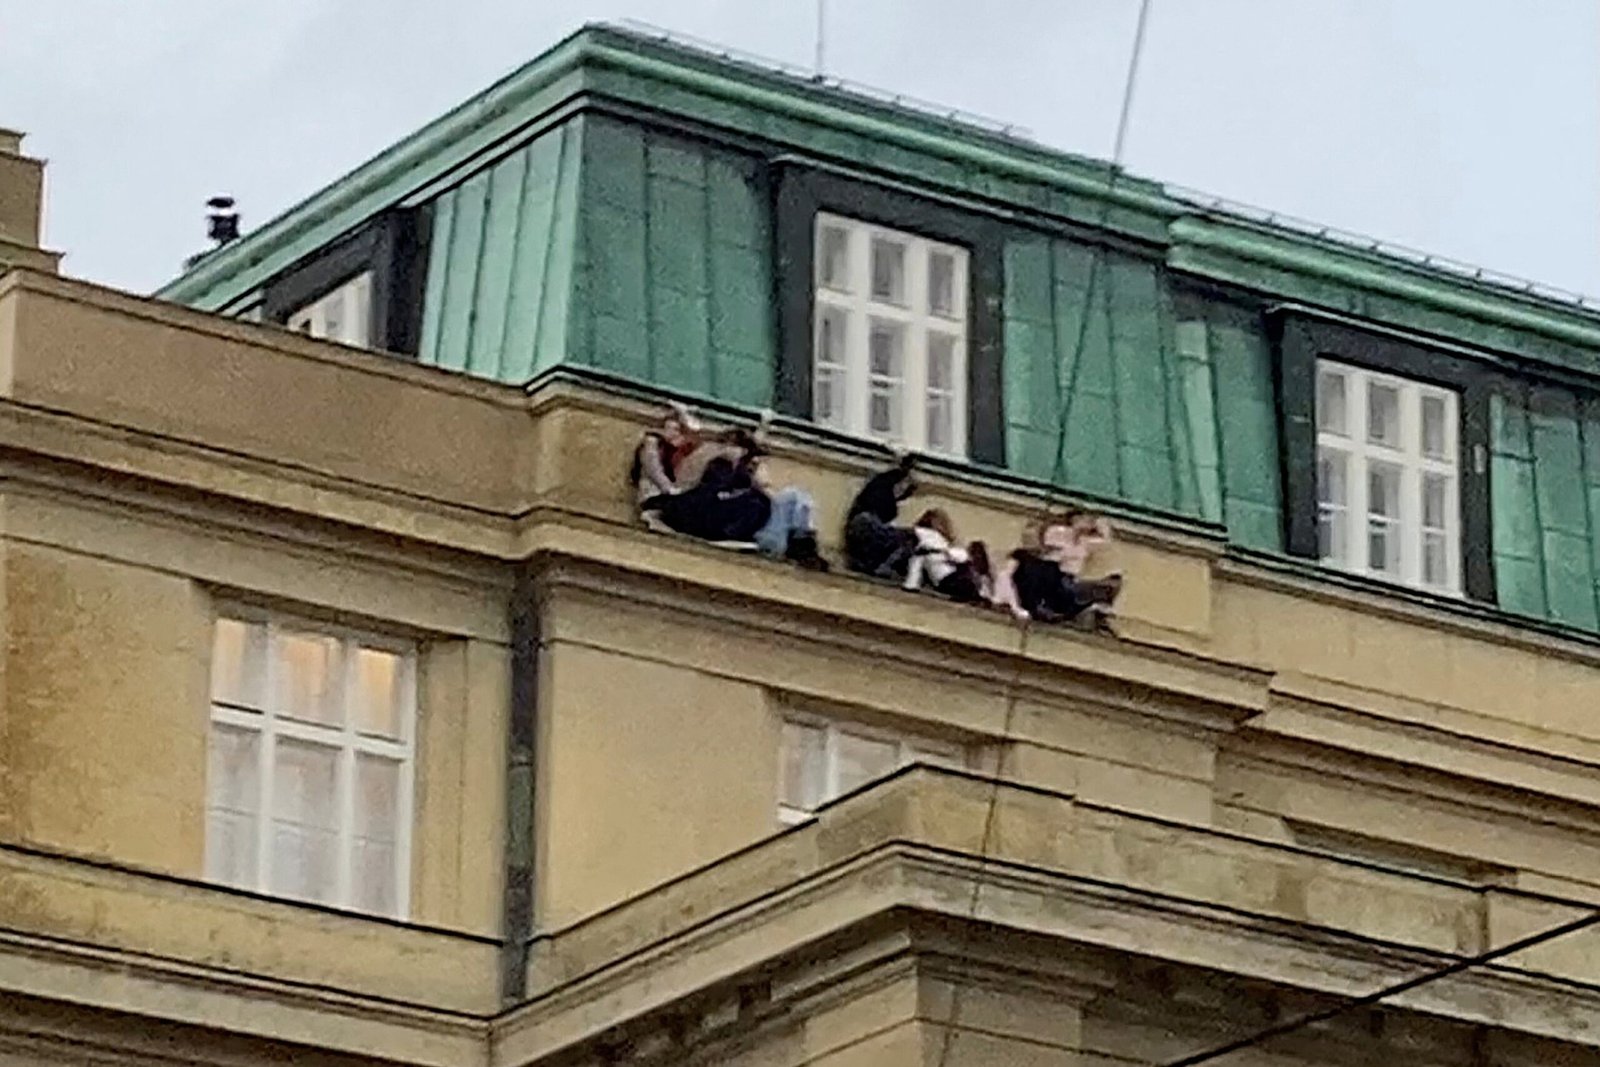 Prague university shooting